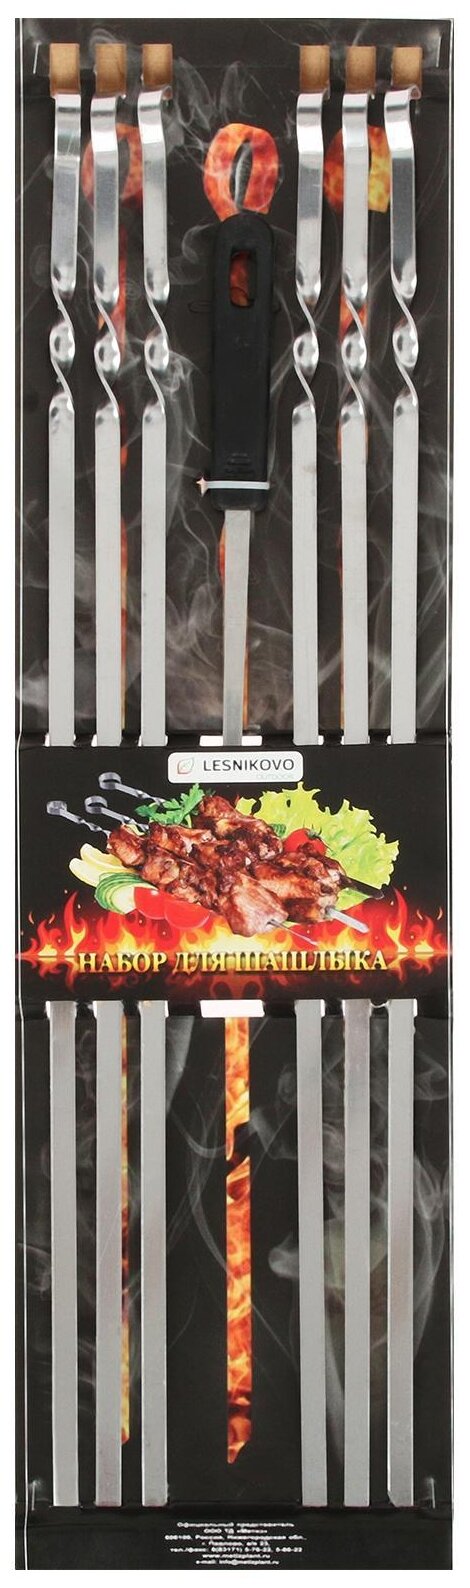 Шампуры набор (6 шампуров + вилка для мяса), размер 585 х 10 х 2 мм - фотография № 1